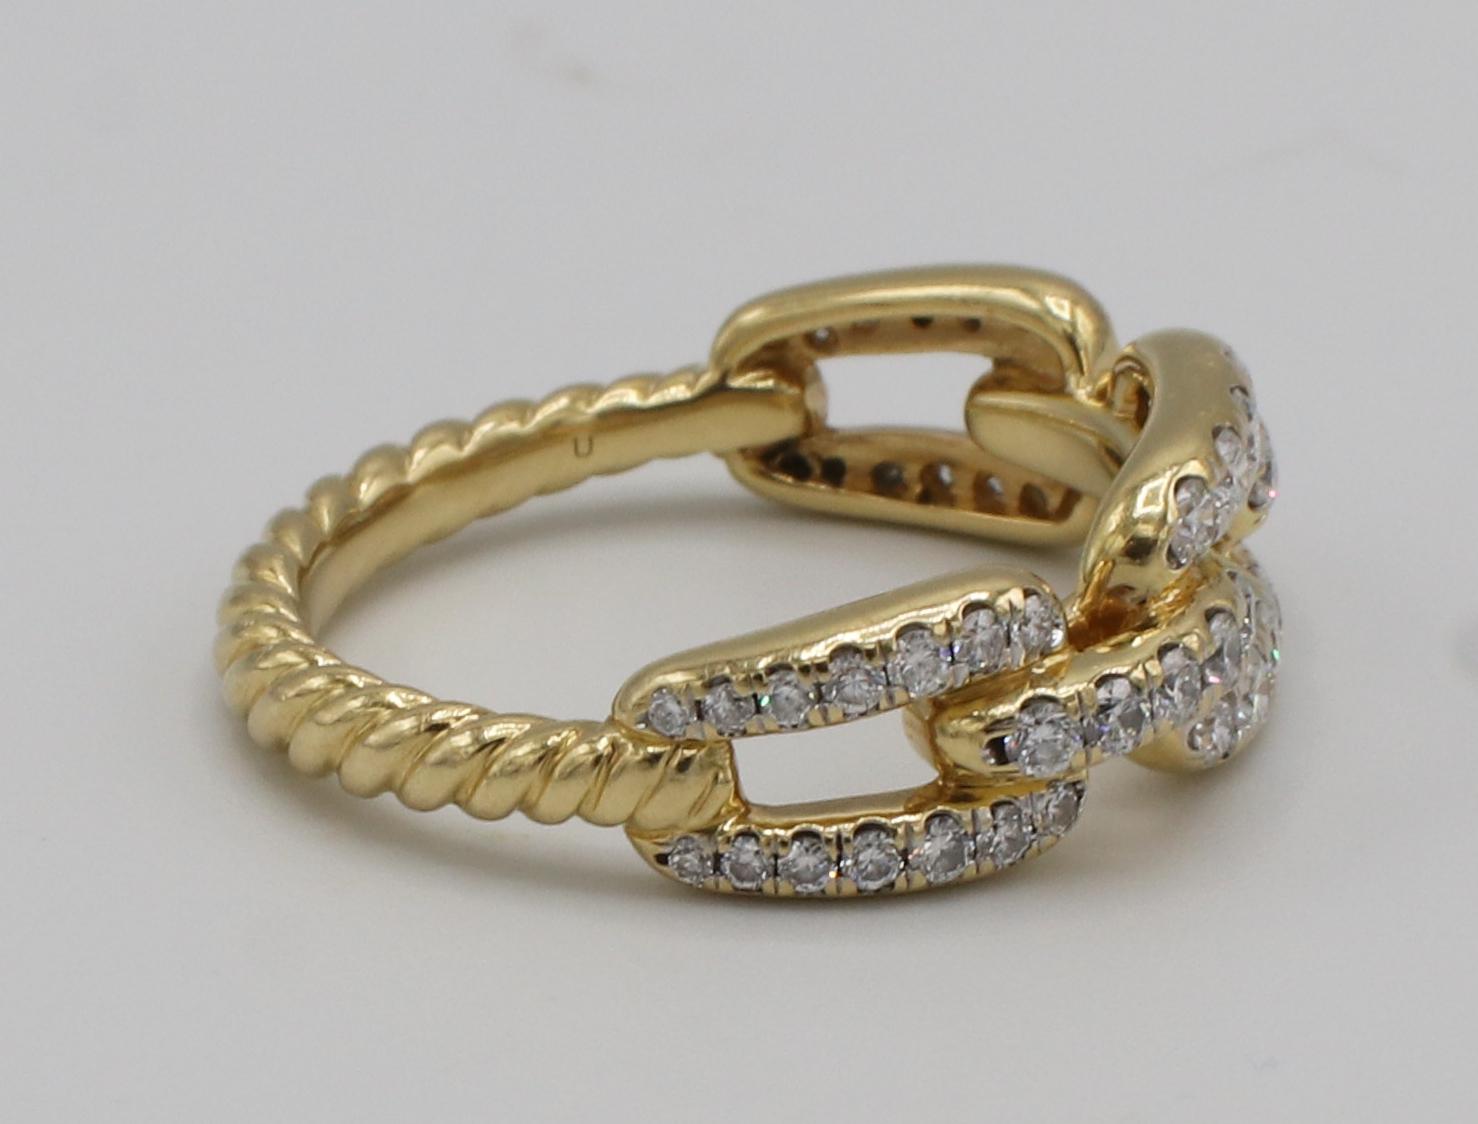 David Yurman Kette Link 18K Gelbgold Pavé Naturdiamant Ring 
Metall: 18 Karat Gelbgold
Diamanten: Natürliche runde Diamanten, 0,51 Karat Gesamtgewicht
Breite: 7 mm
Größe: 6 (US)
Gewicht: 4.65 Gramm
Einzelhandel: $2500 USD
Gezeichnet: ©D.Y. 750
